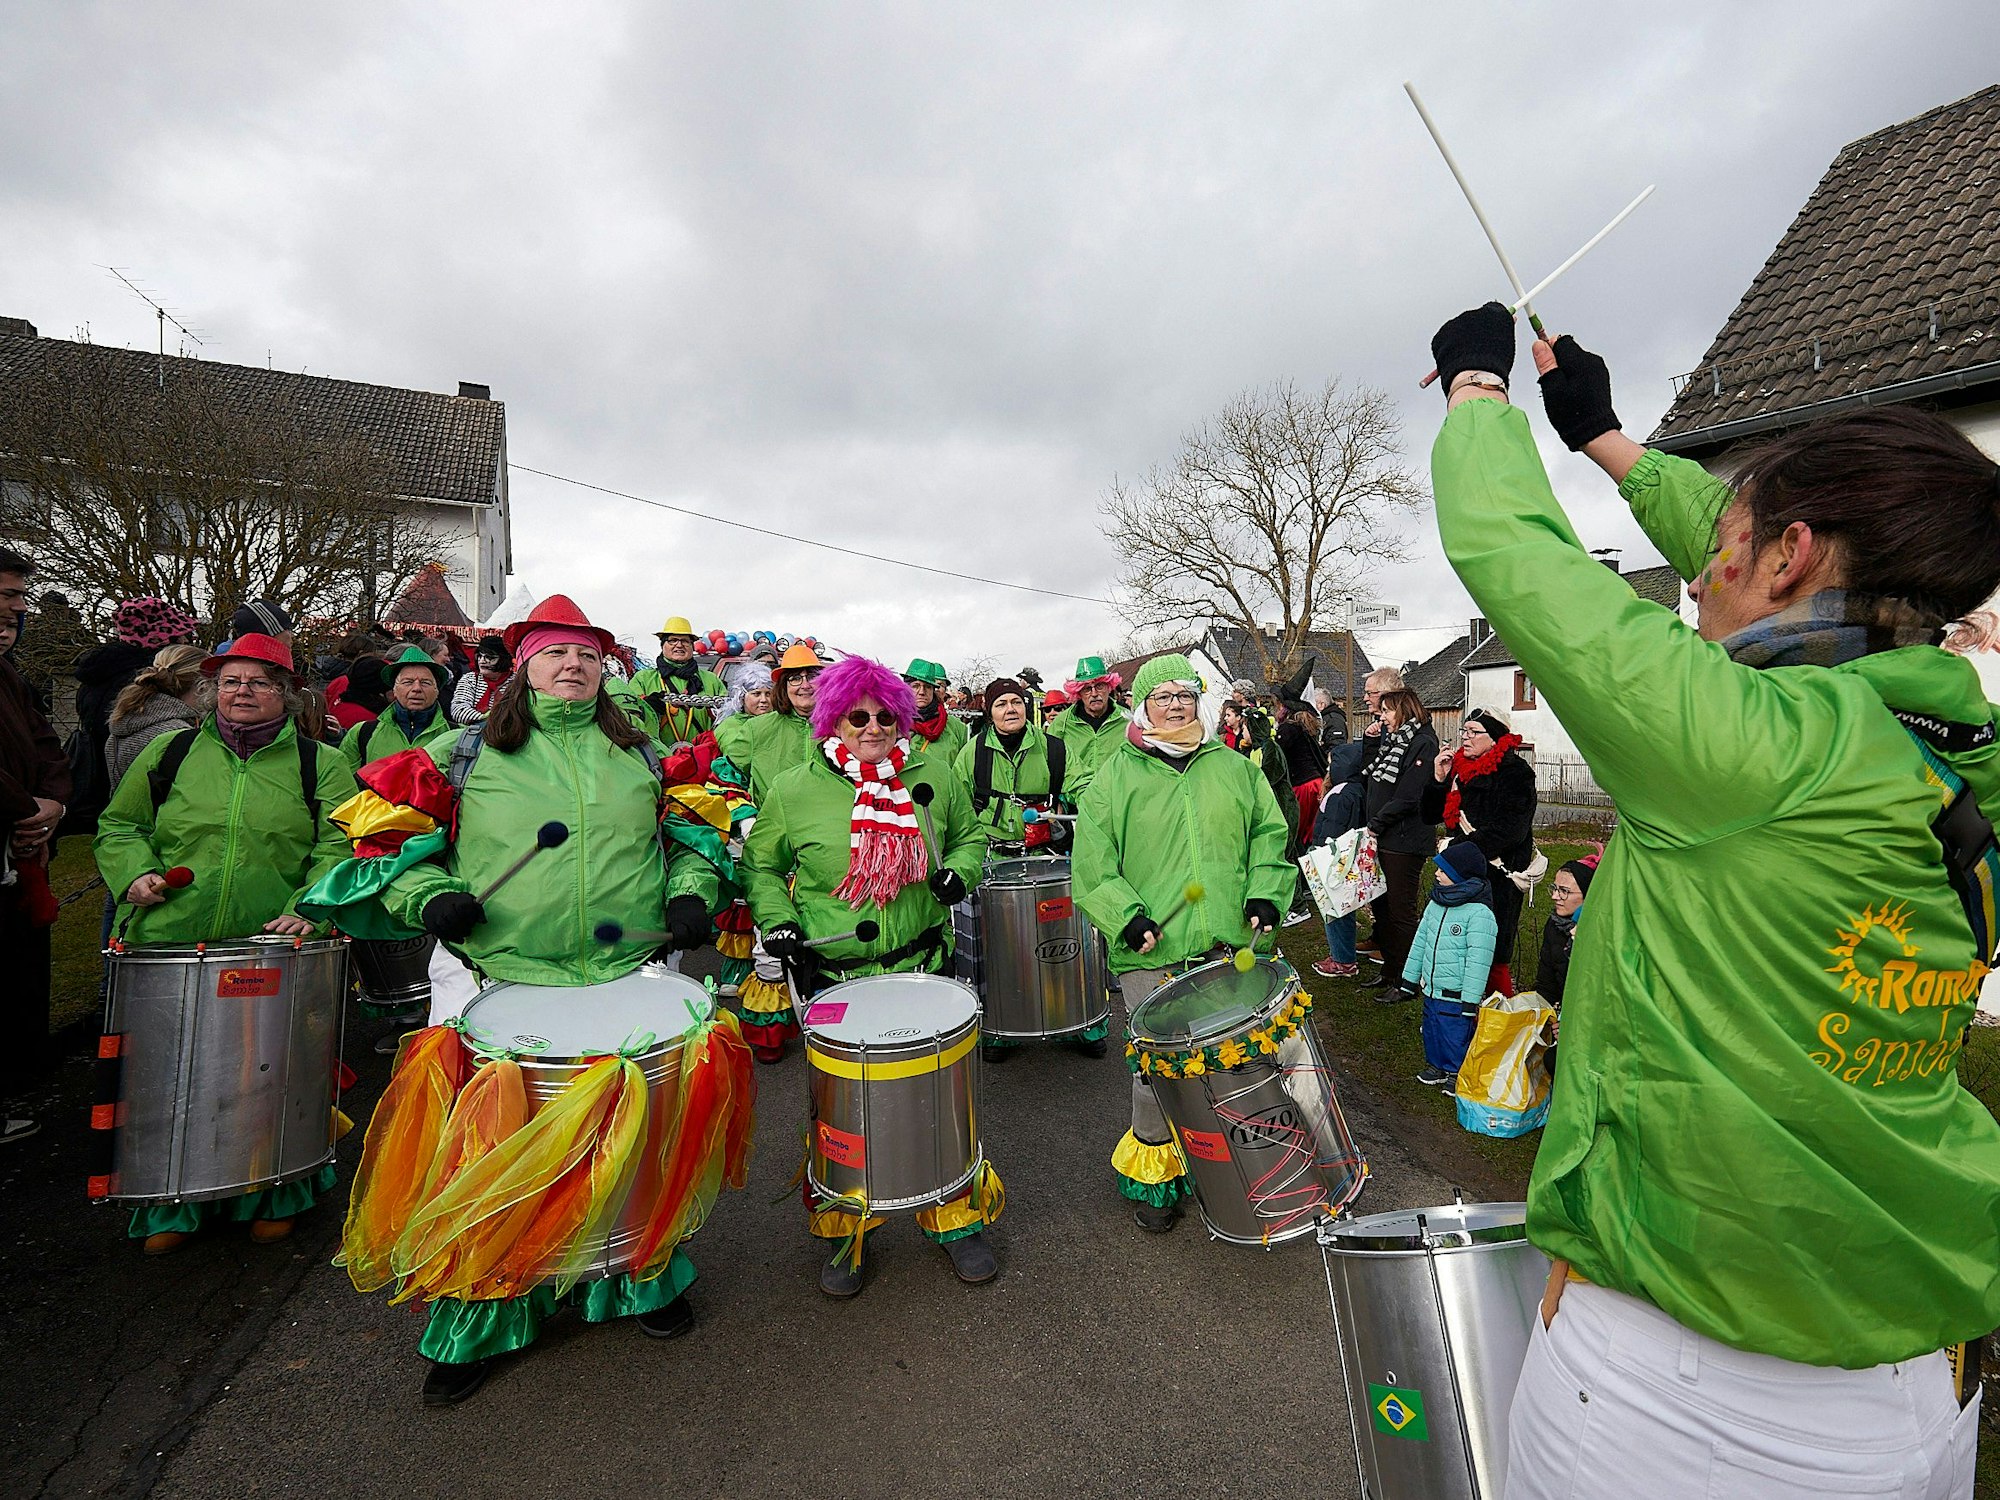 Trommelspieler von Ramba Samba Eifel spielen im Karnevalszug in Hecken.